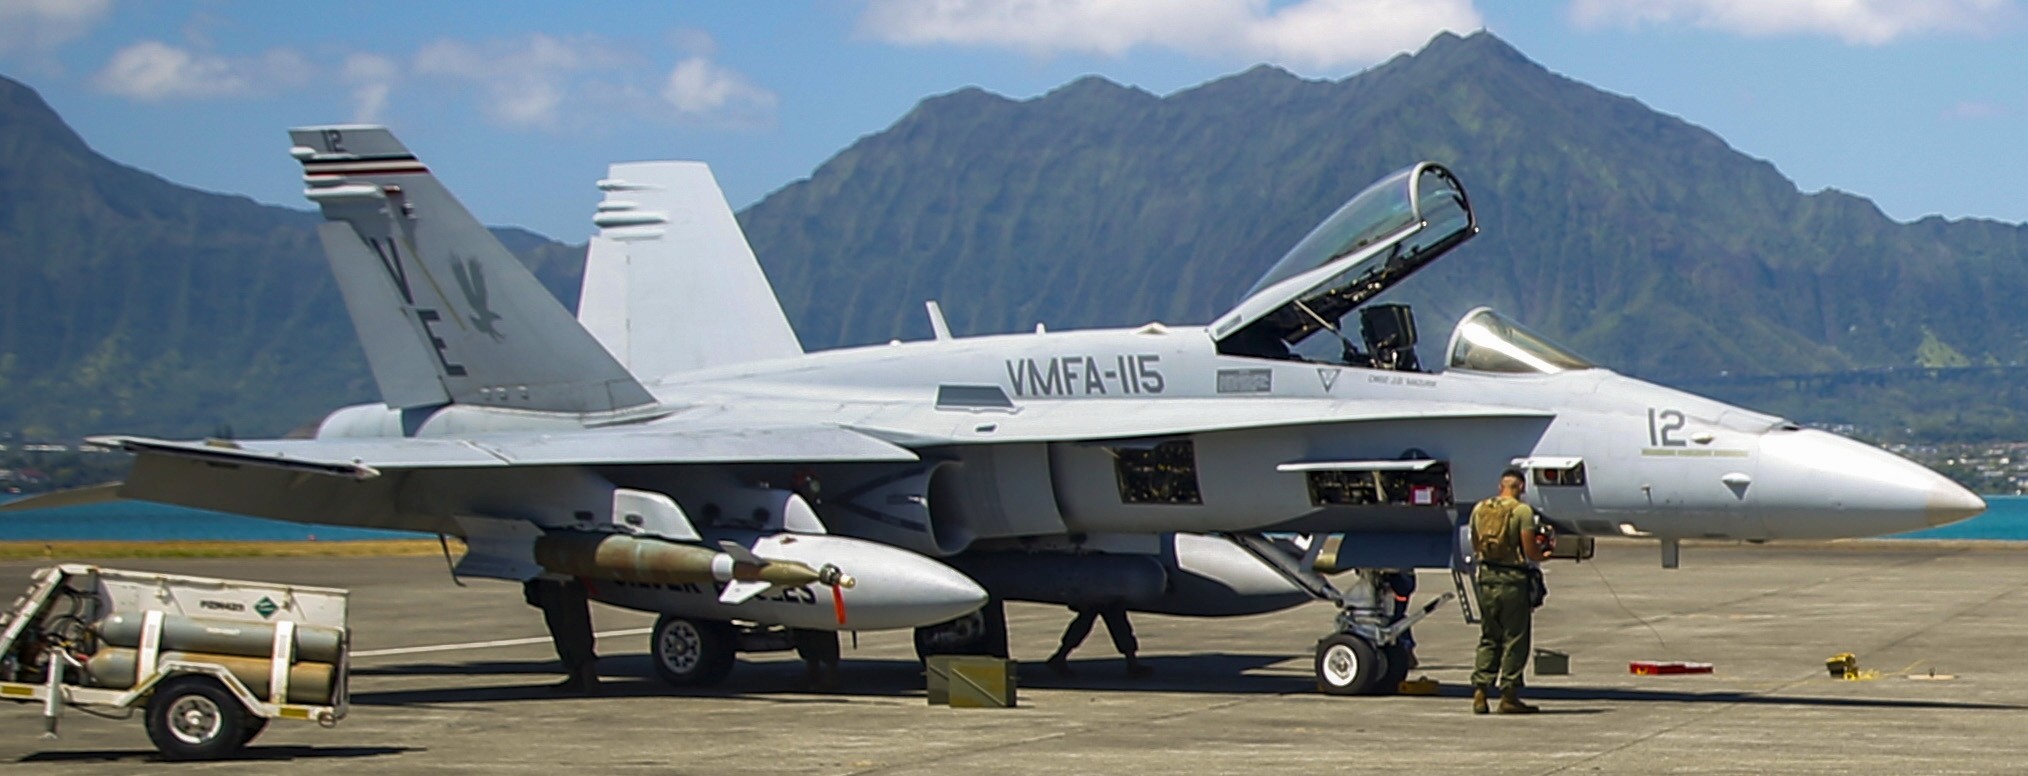 vmfa-115 silver eagles marine fighter attack squadron usmc f/a-18c hornet 199